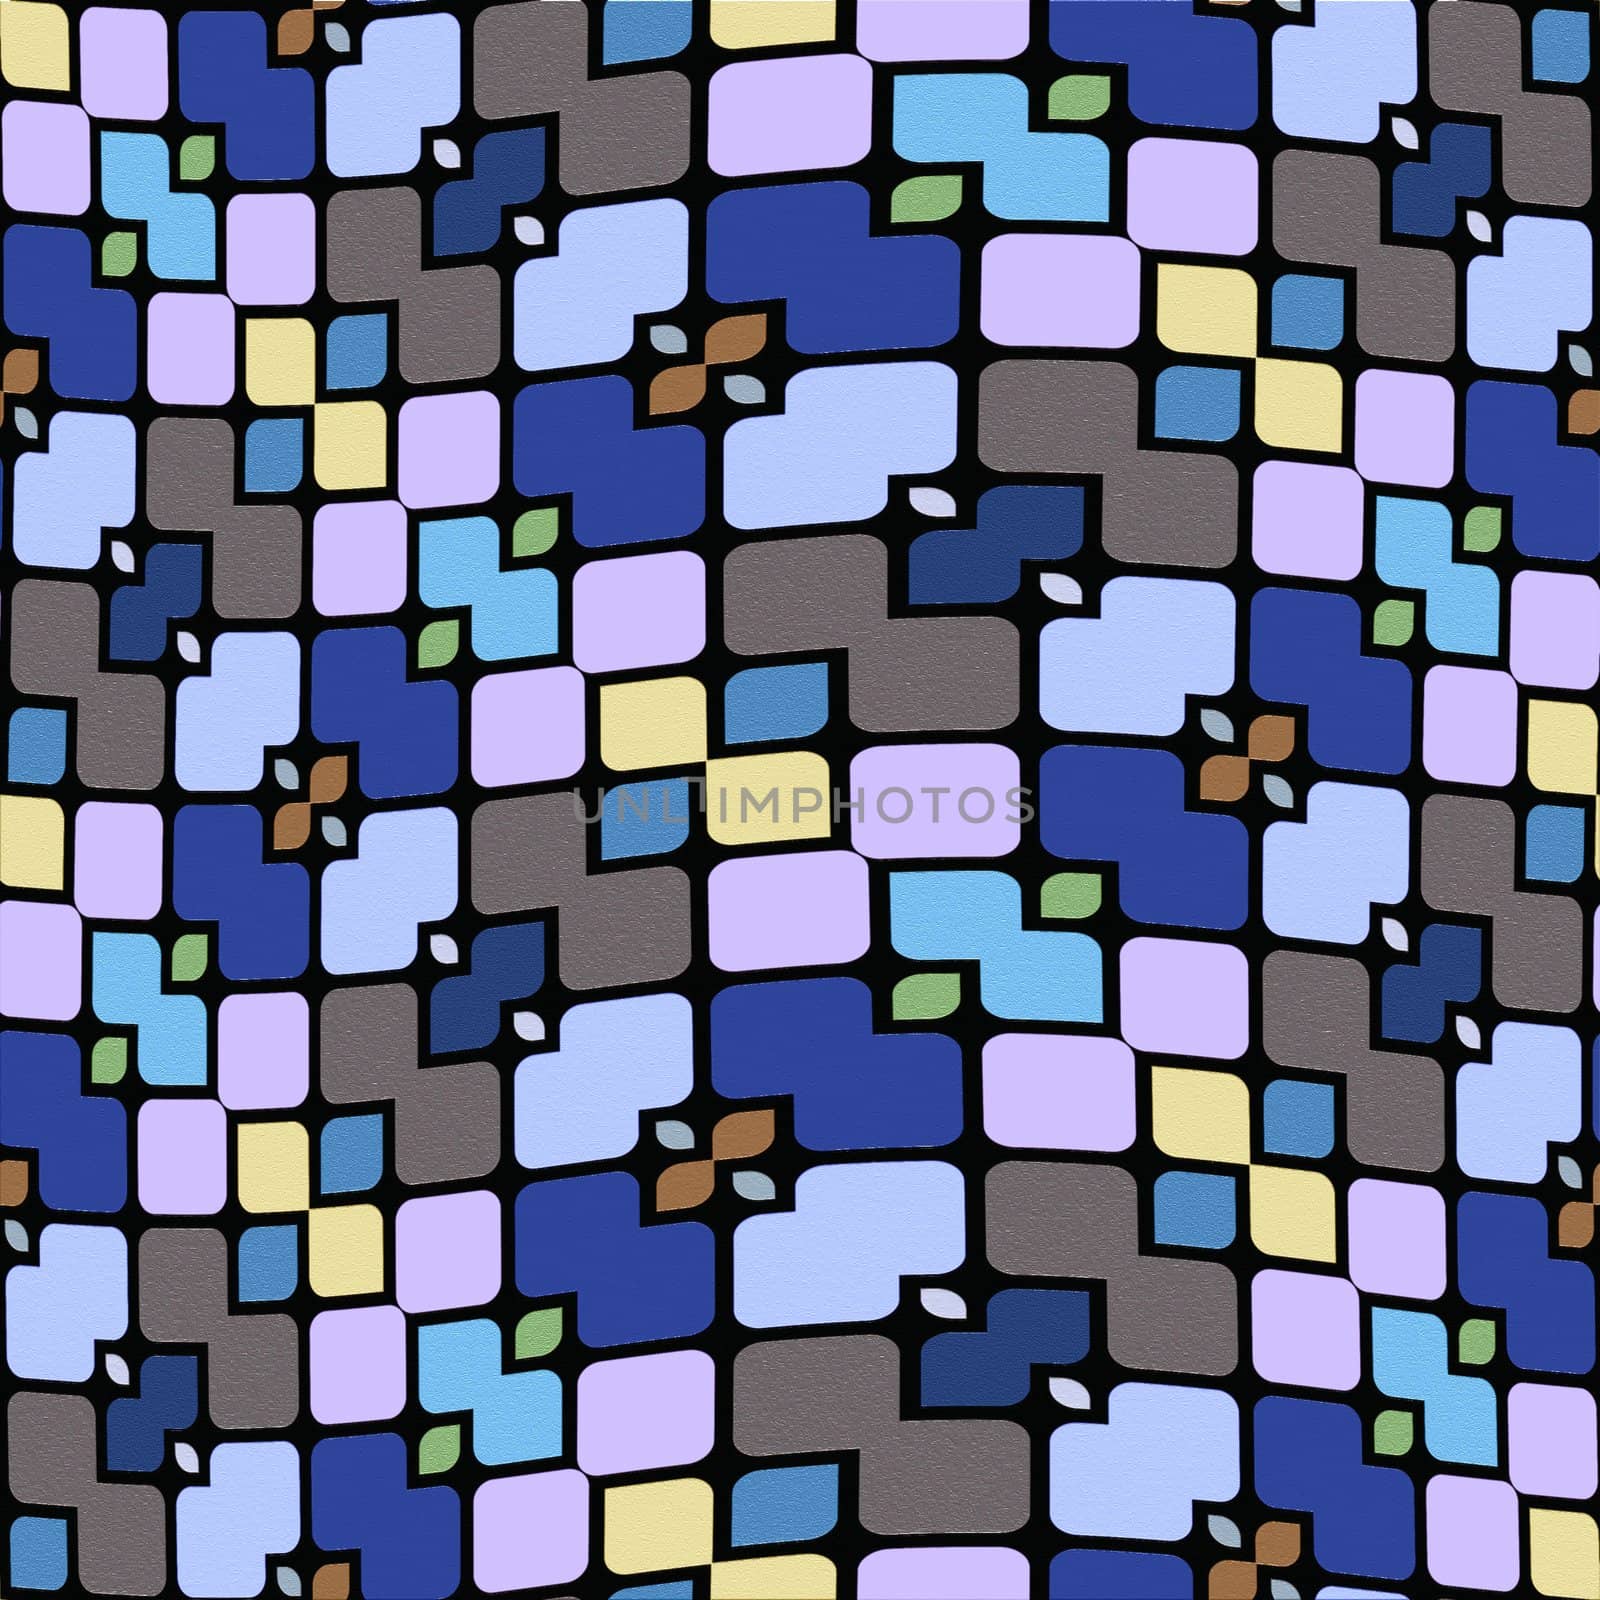 festive tile pattern by weknow